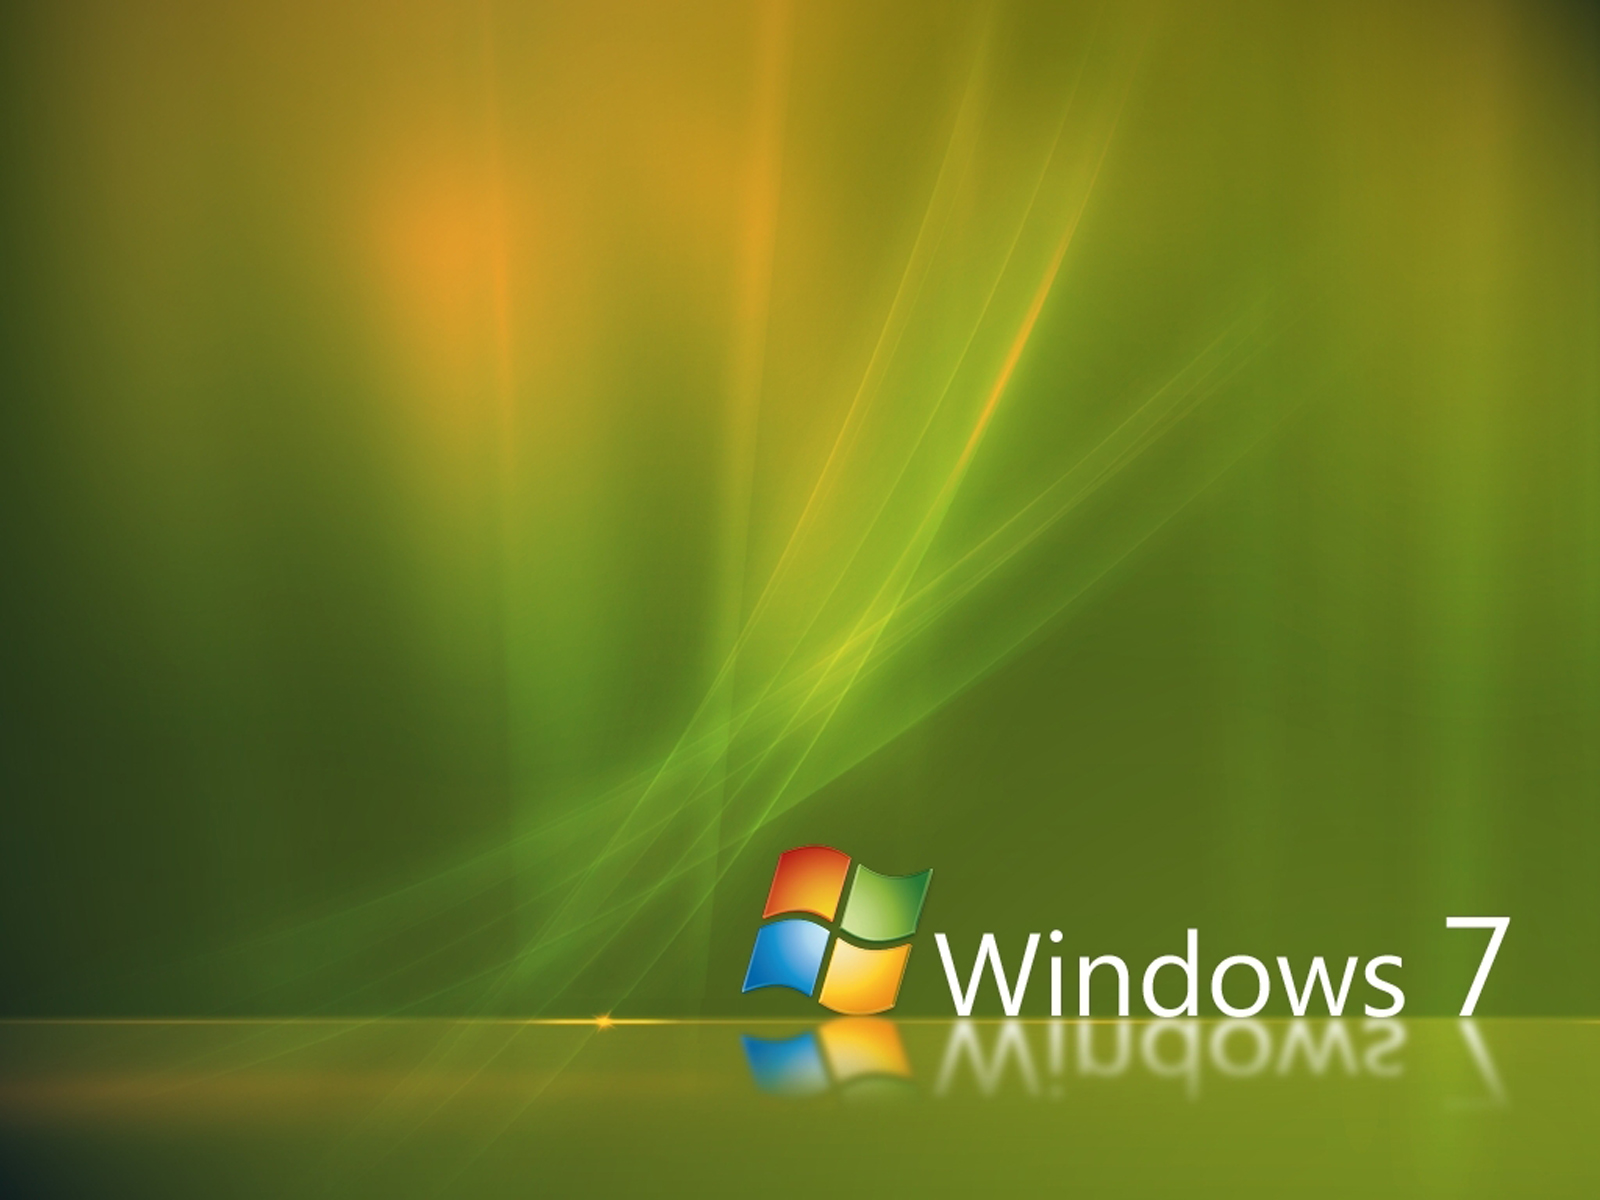 Window HD Wallpaper Of Windows